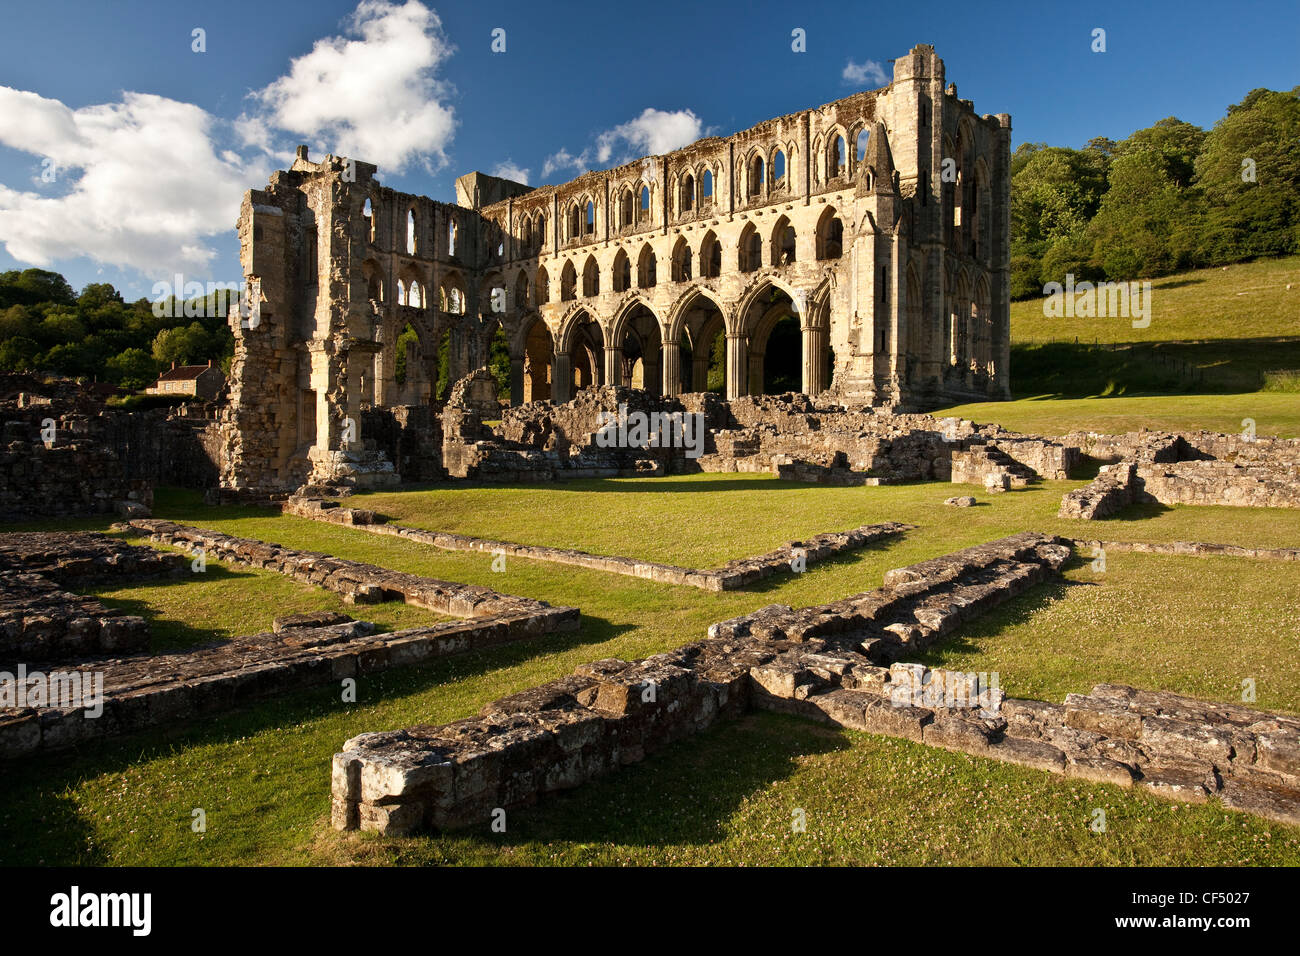 Las ruinas de Rievaulx Abbey, una abadía cisterciense fundada en 1132 y disuelta por Enrique VIII en 1538. Foto de stock